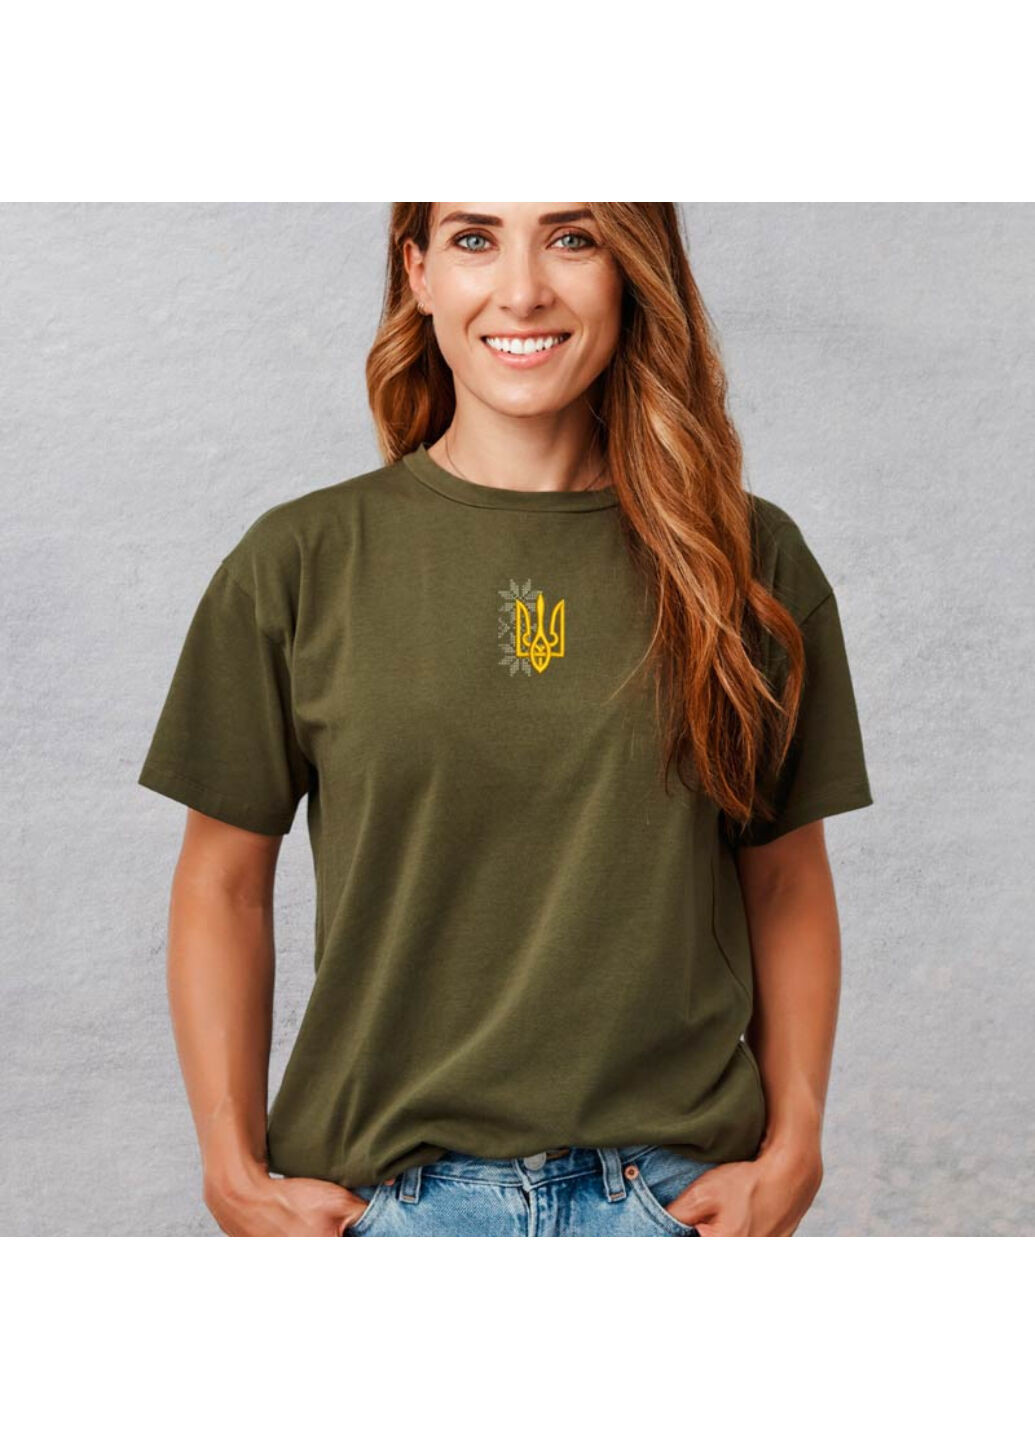 Хаки (оливковая) футболка з вишивкою тризуба 02-5 женская хаки l No Brand